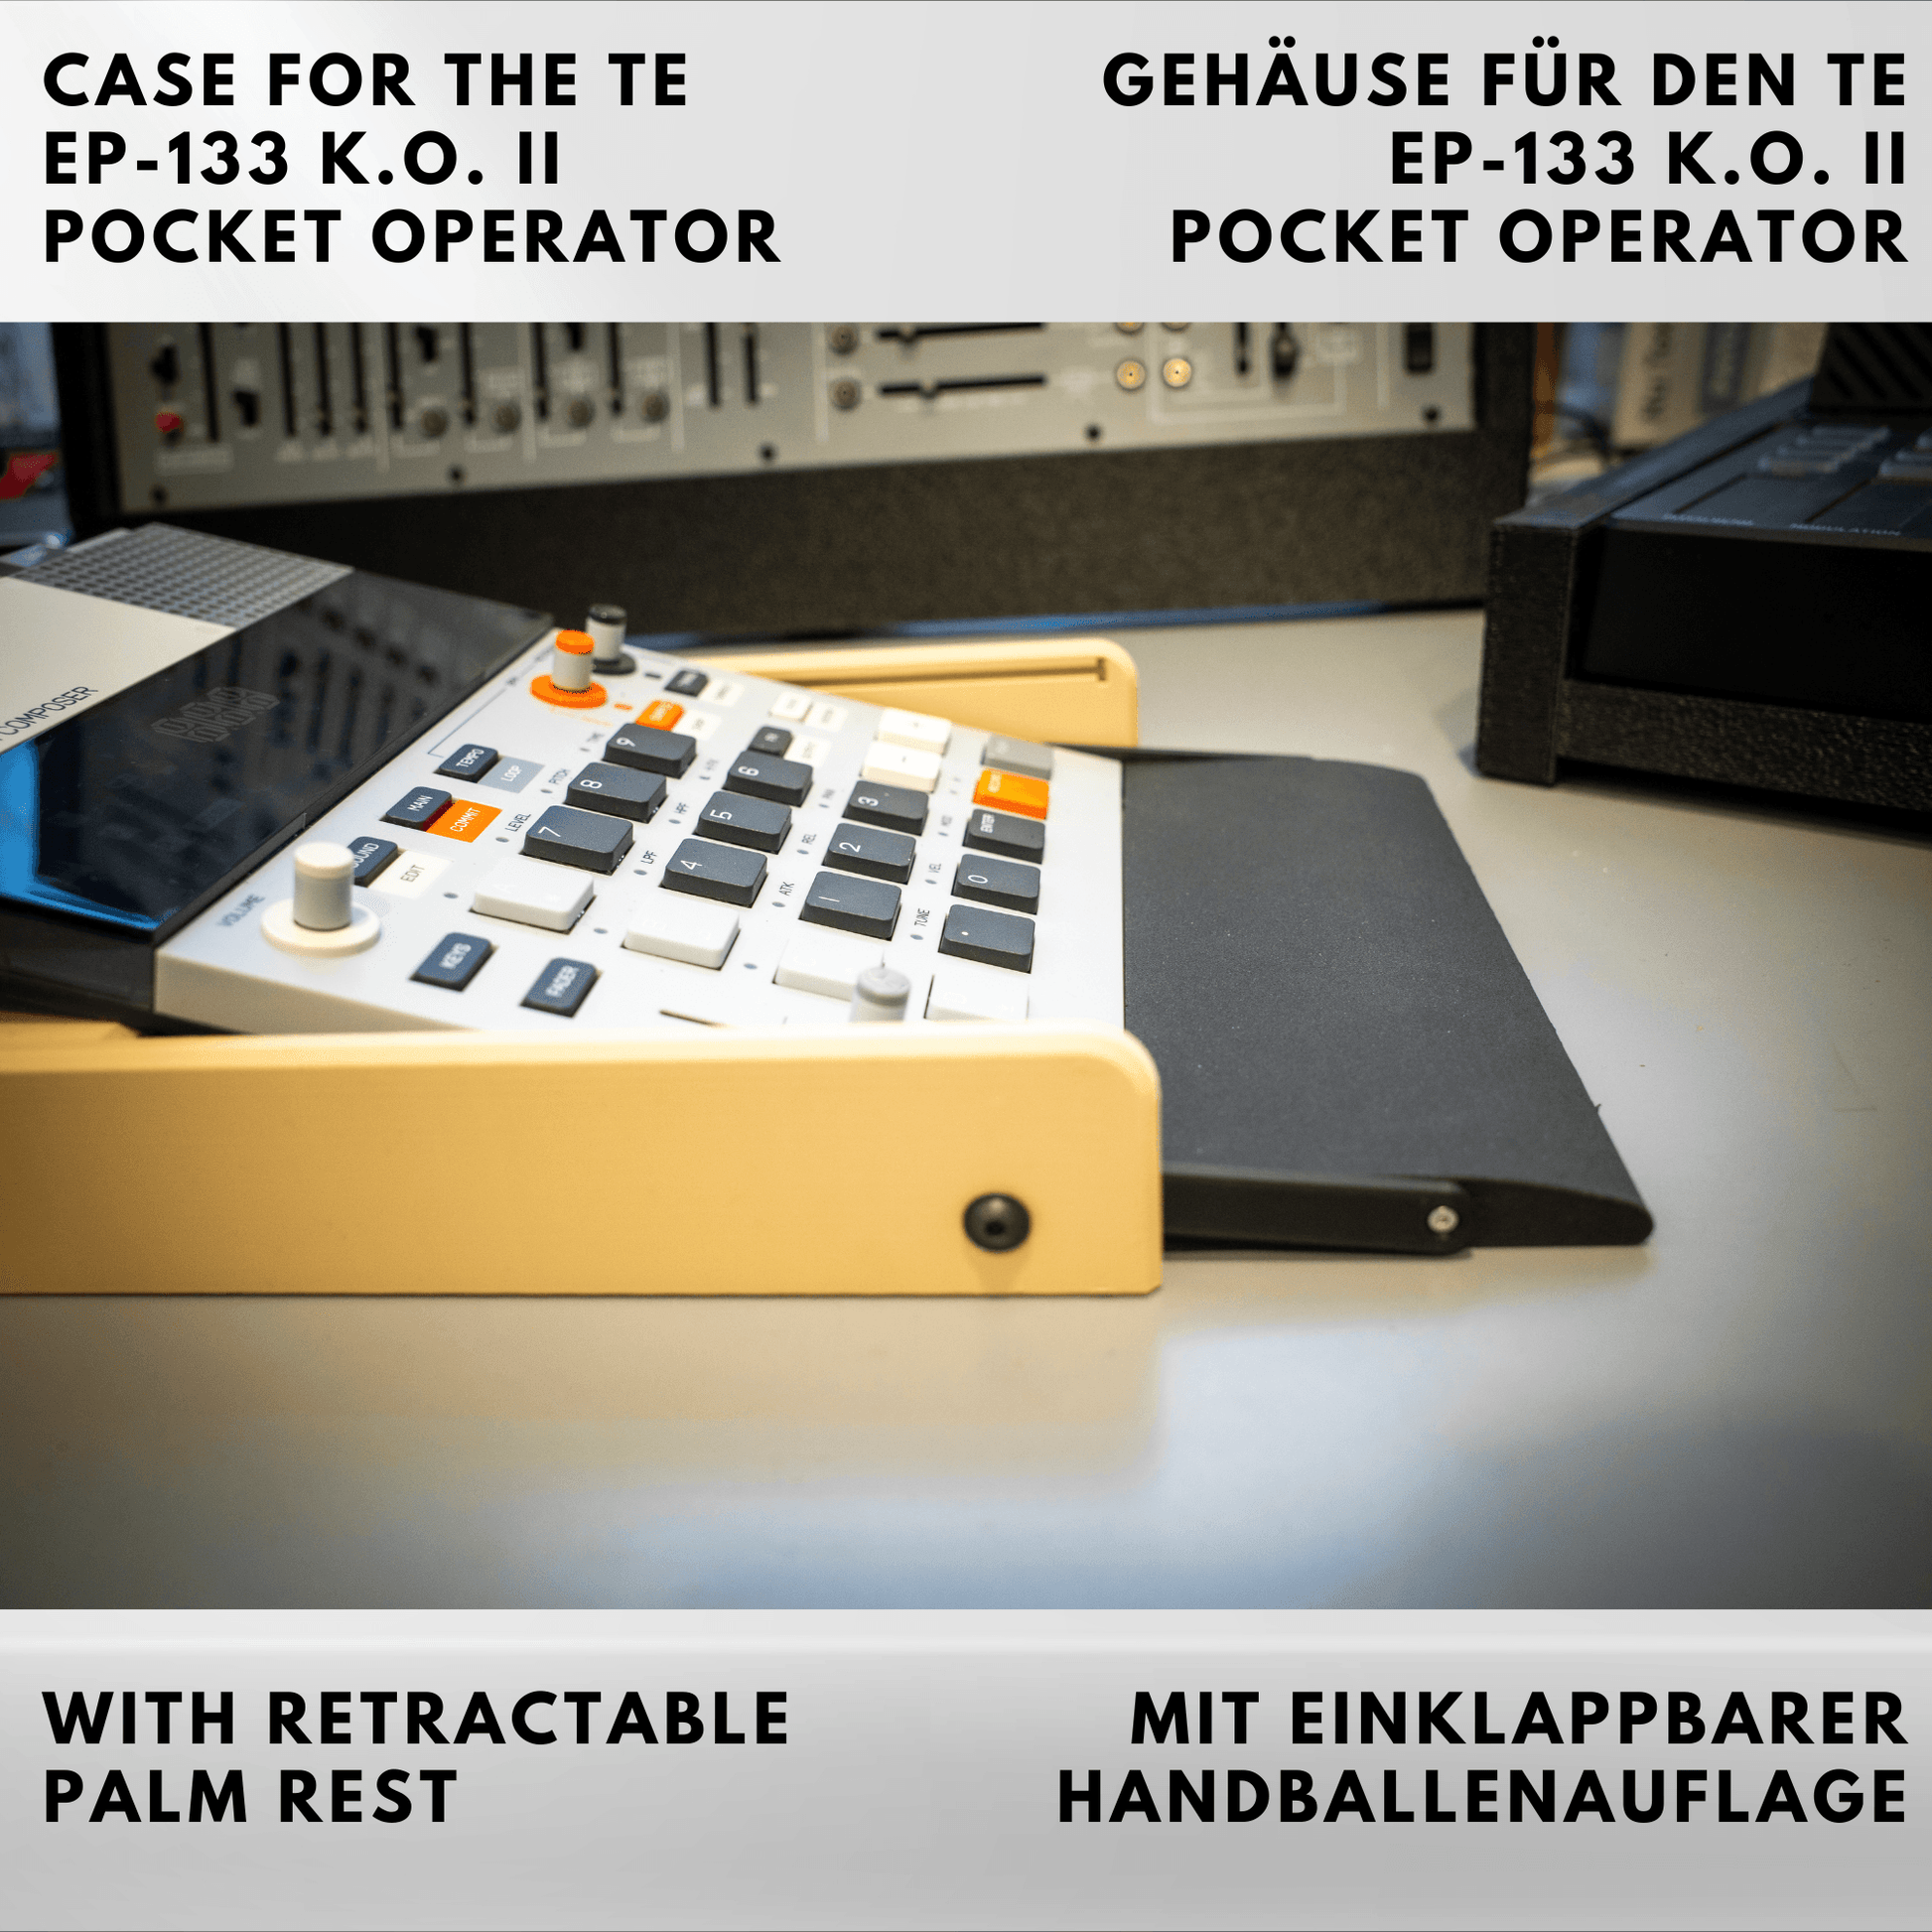 EP-133 K.O. II Pocketoperator - FliPO-WGL Gehäuse und Ständer mit Handballenauflage <GLATT> - SPM3x.com - Spillerphoto & Music